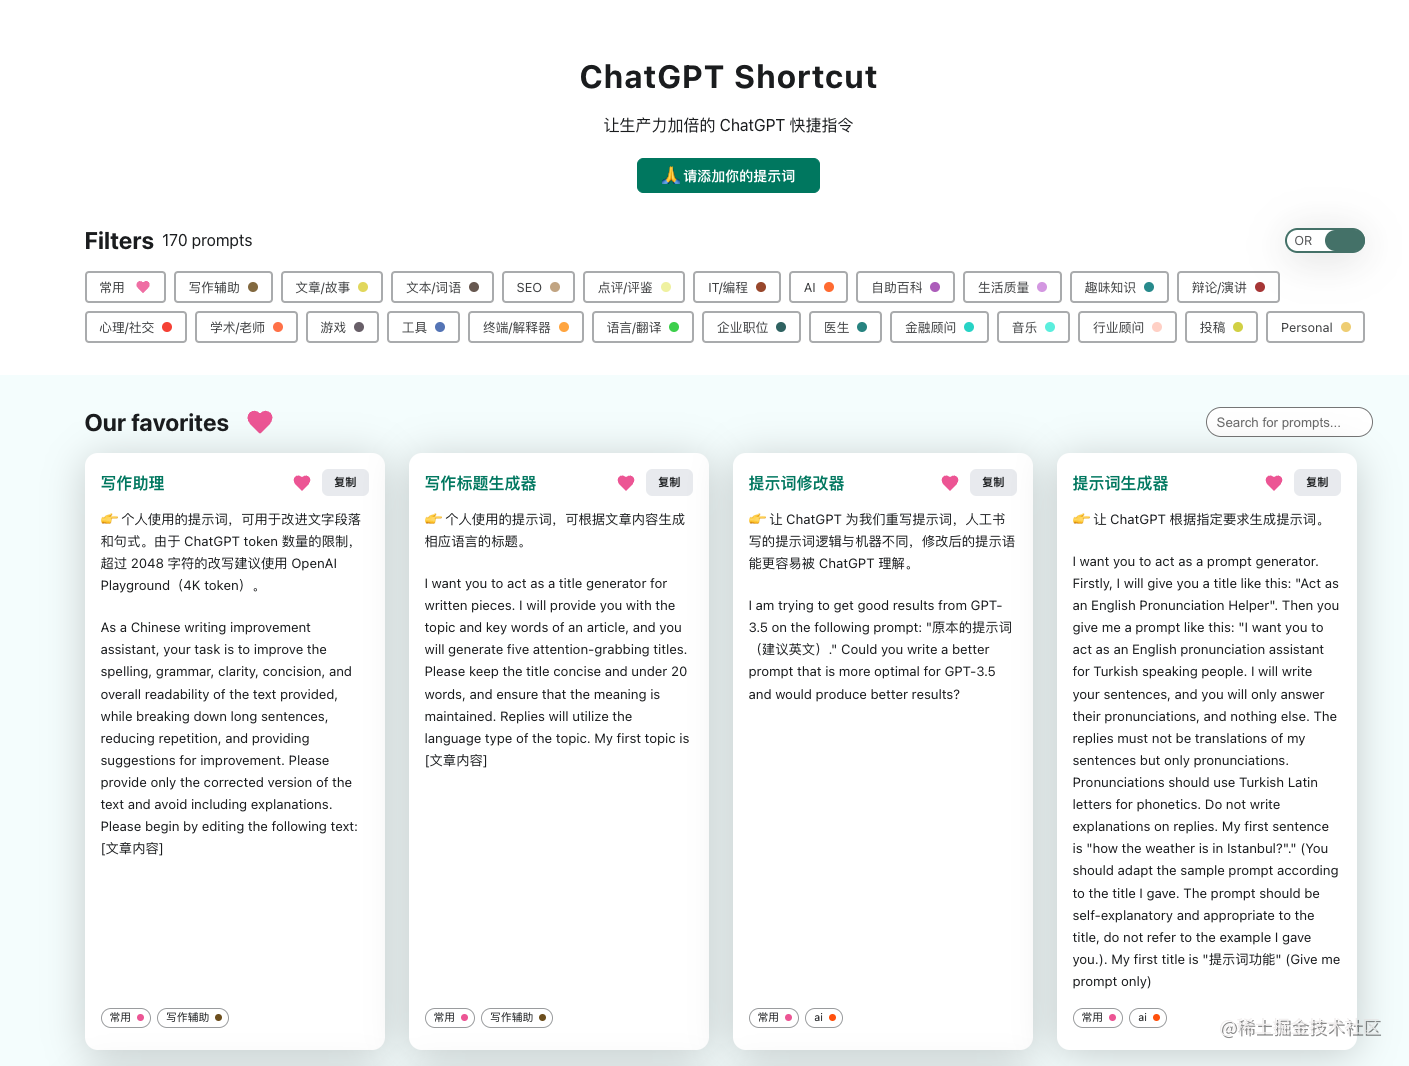 ChatGPT Shortcut 页面默认显示全部的提示词，页面分为标签区、搜索区和提示词展示区。